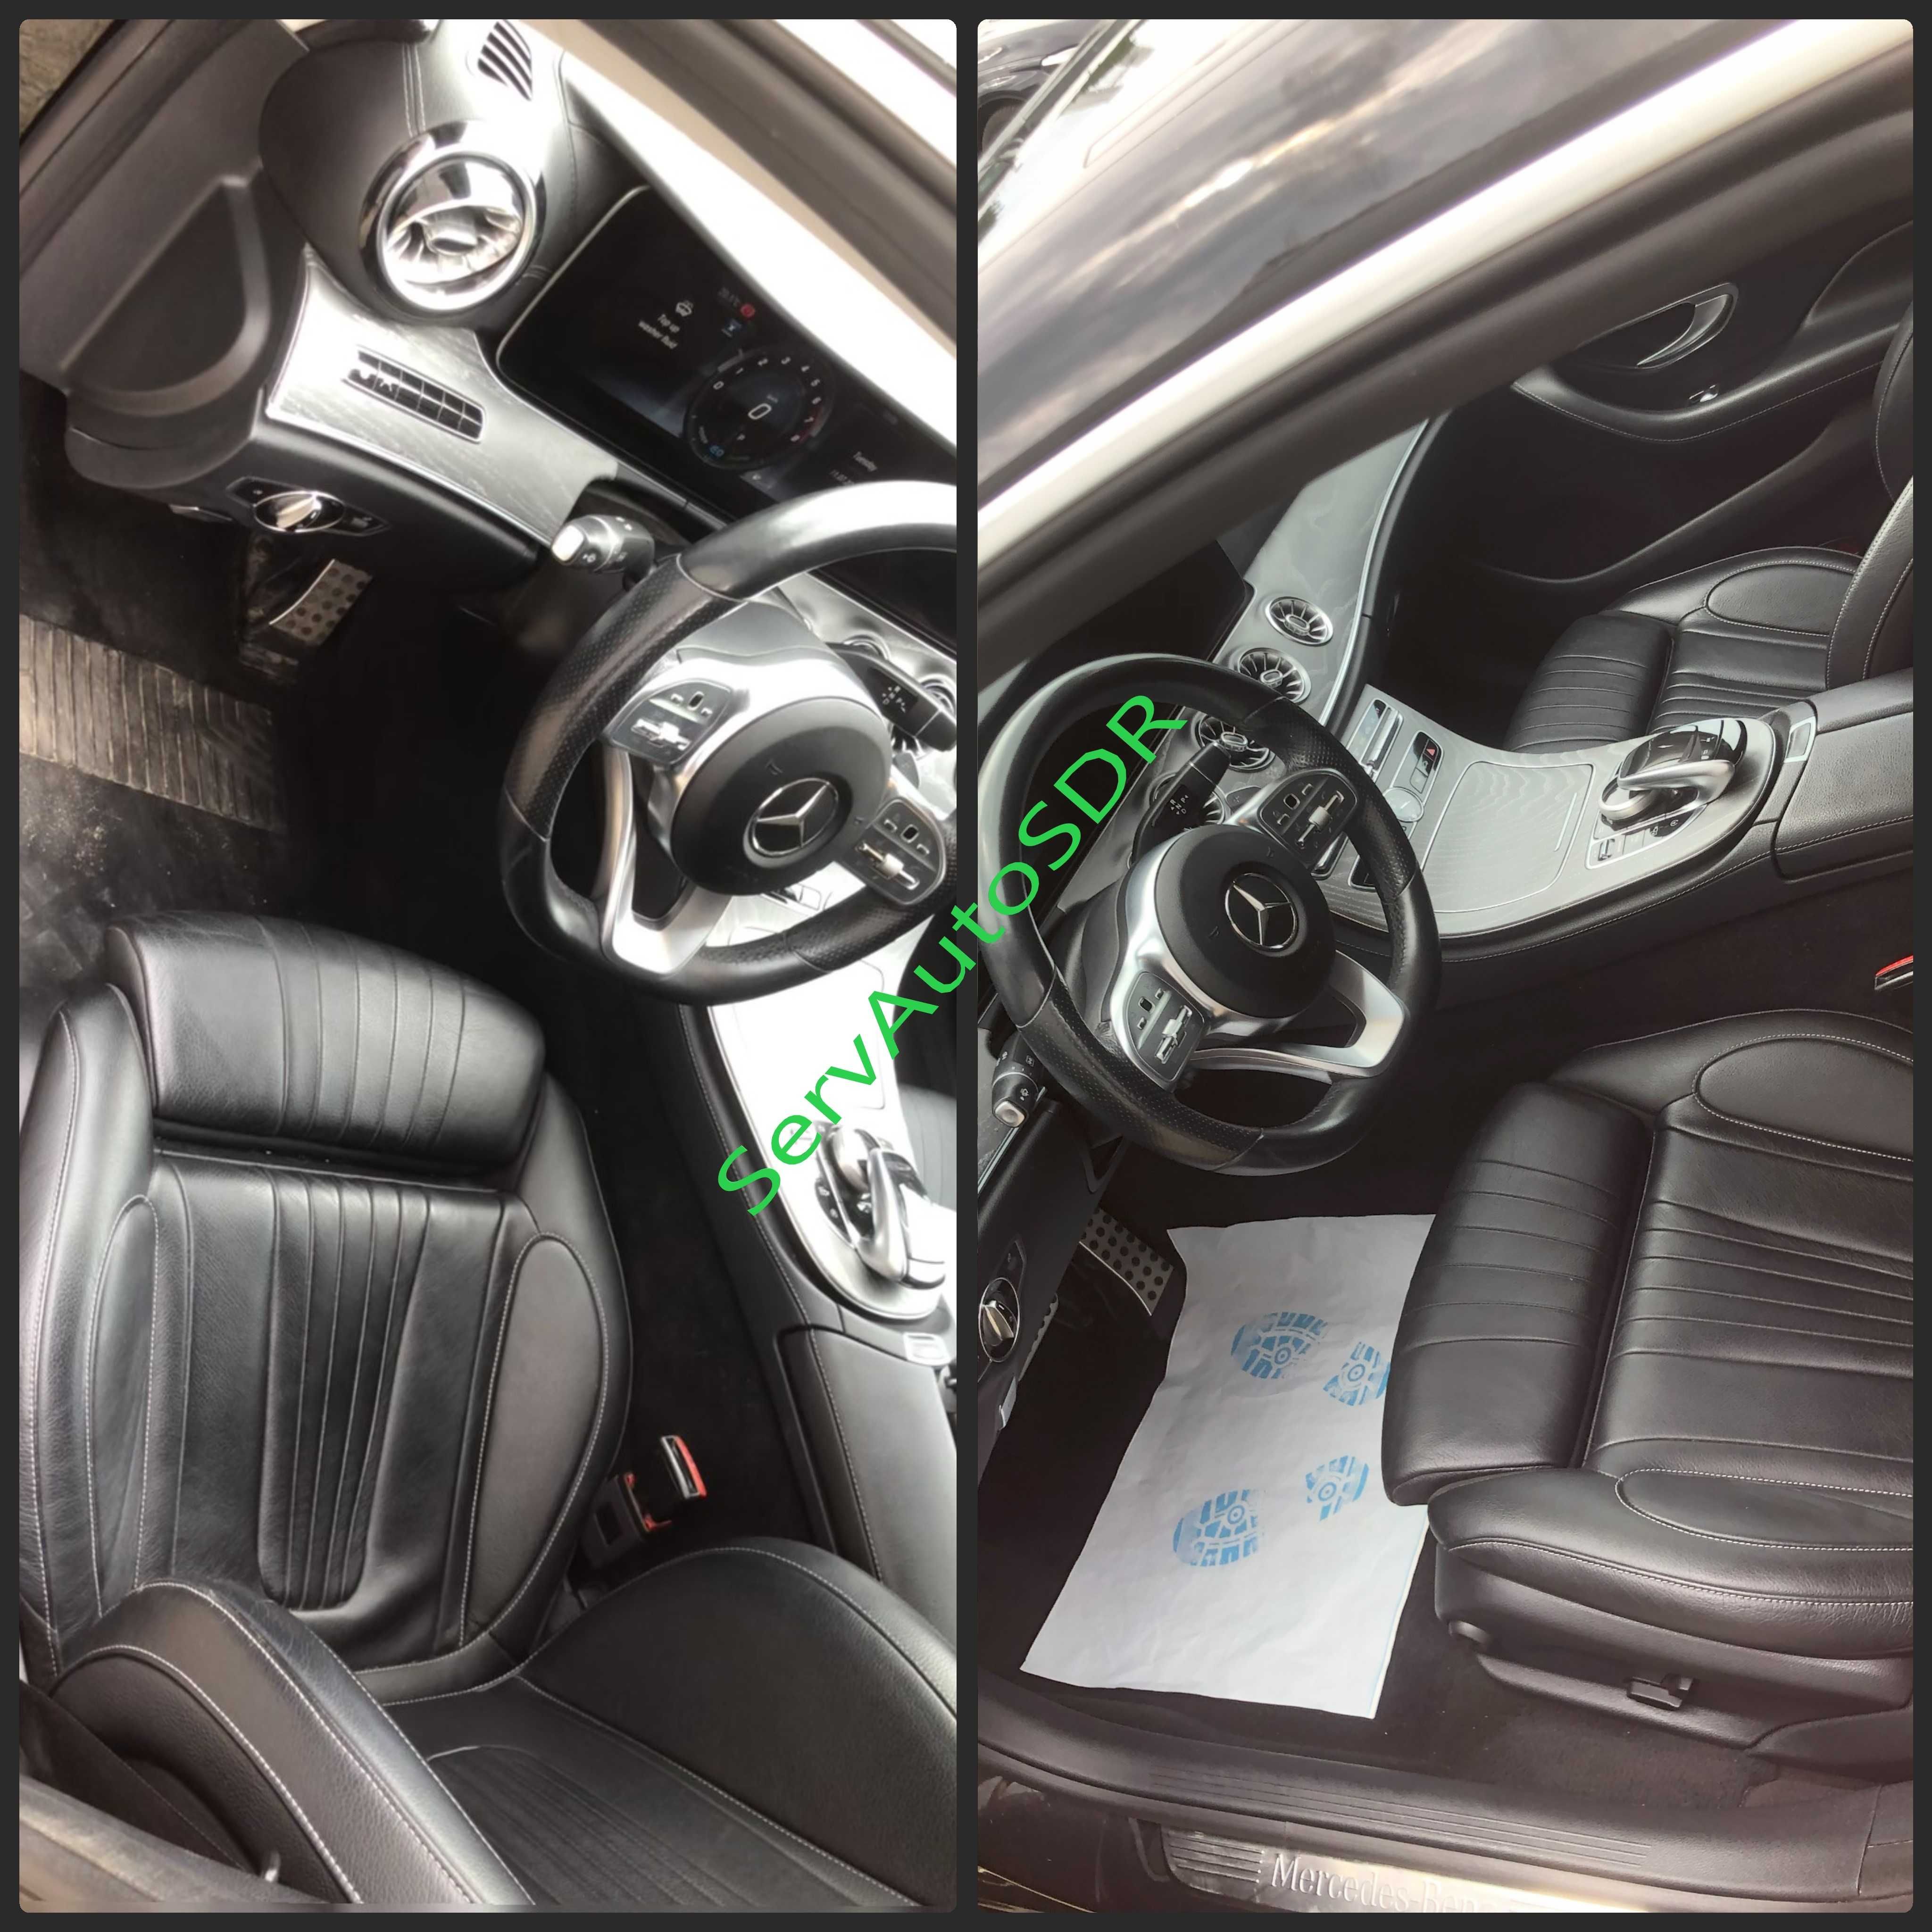 Decolantare auto/Detailling interior/ polish auto